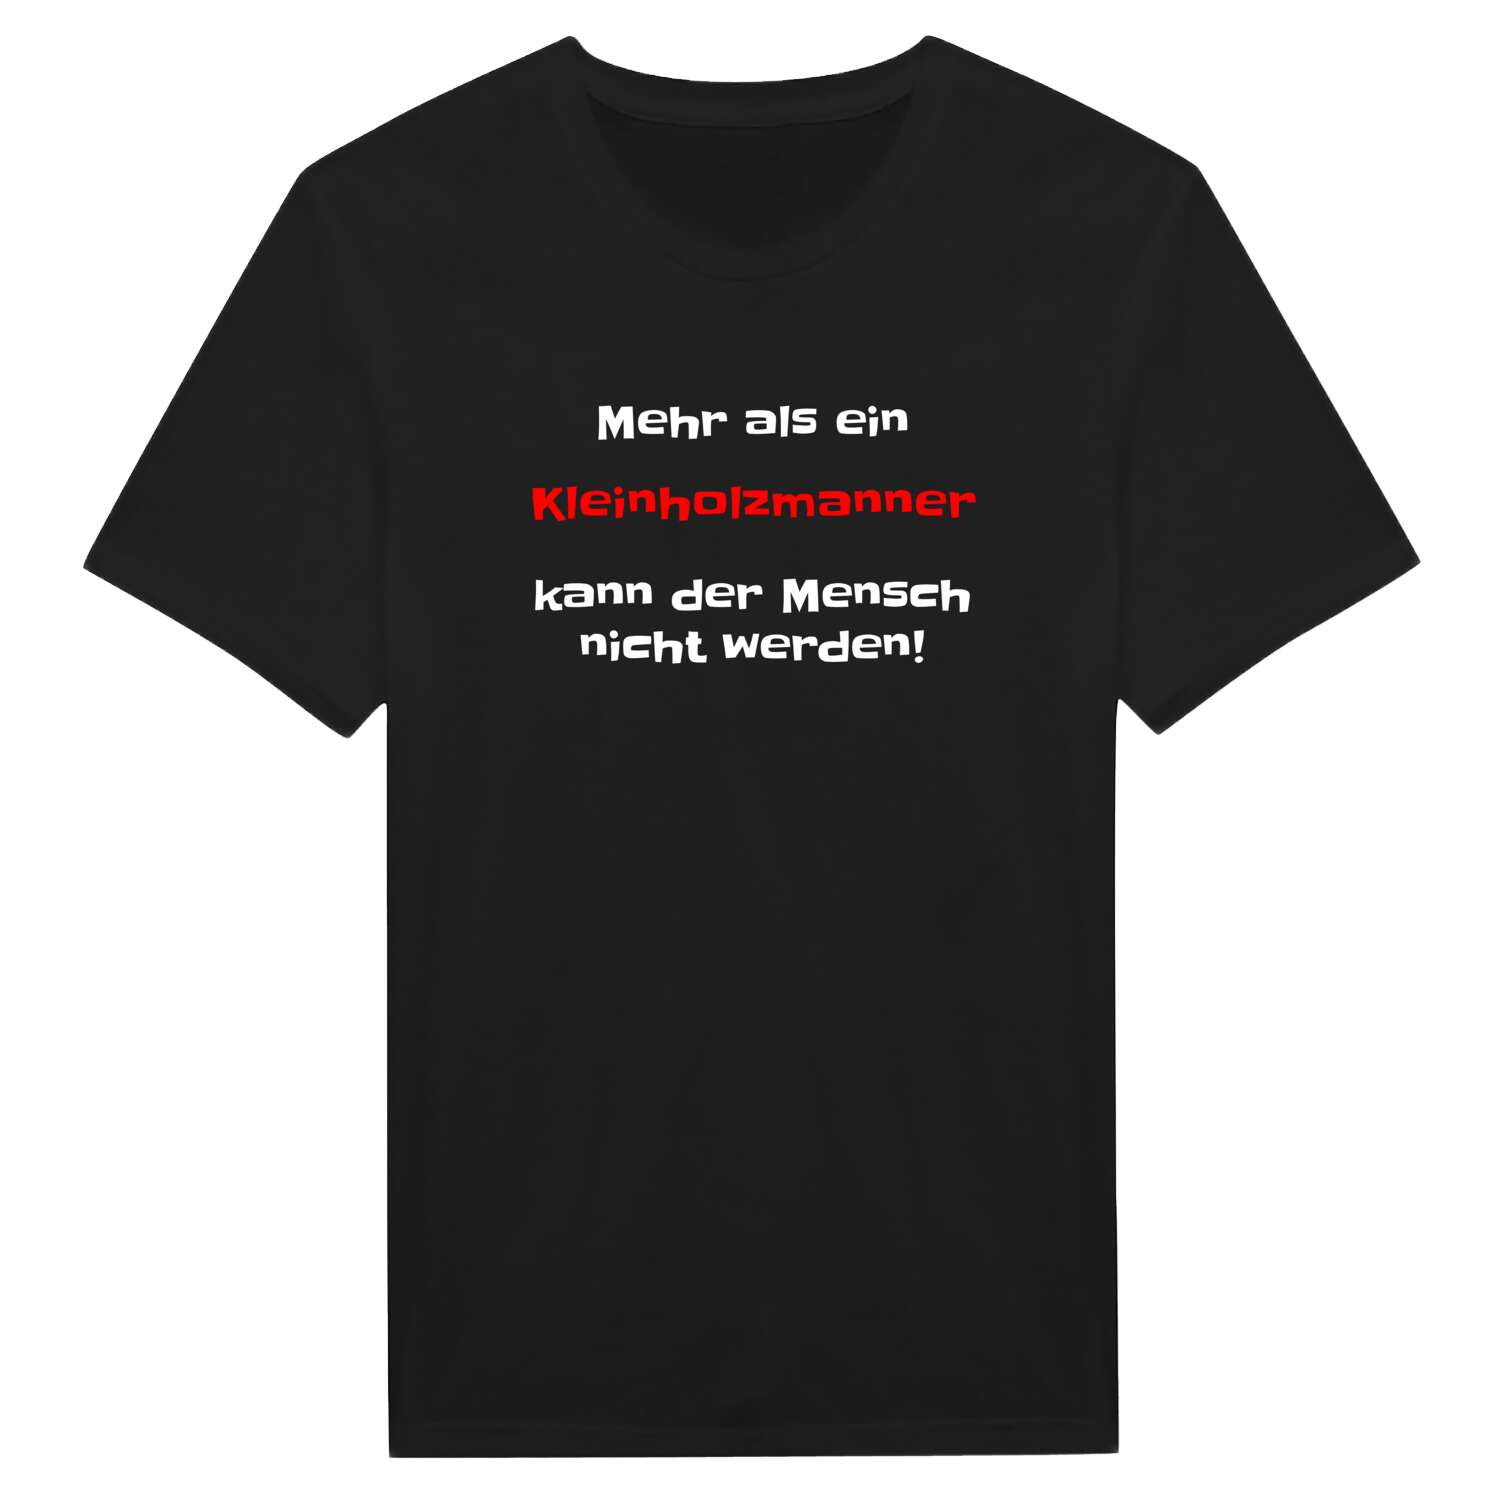 Kleinholzmann T-Shirt »Mehr als ein«